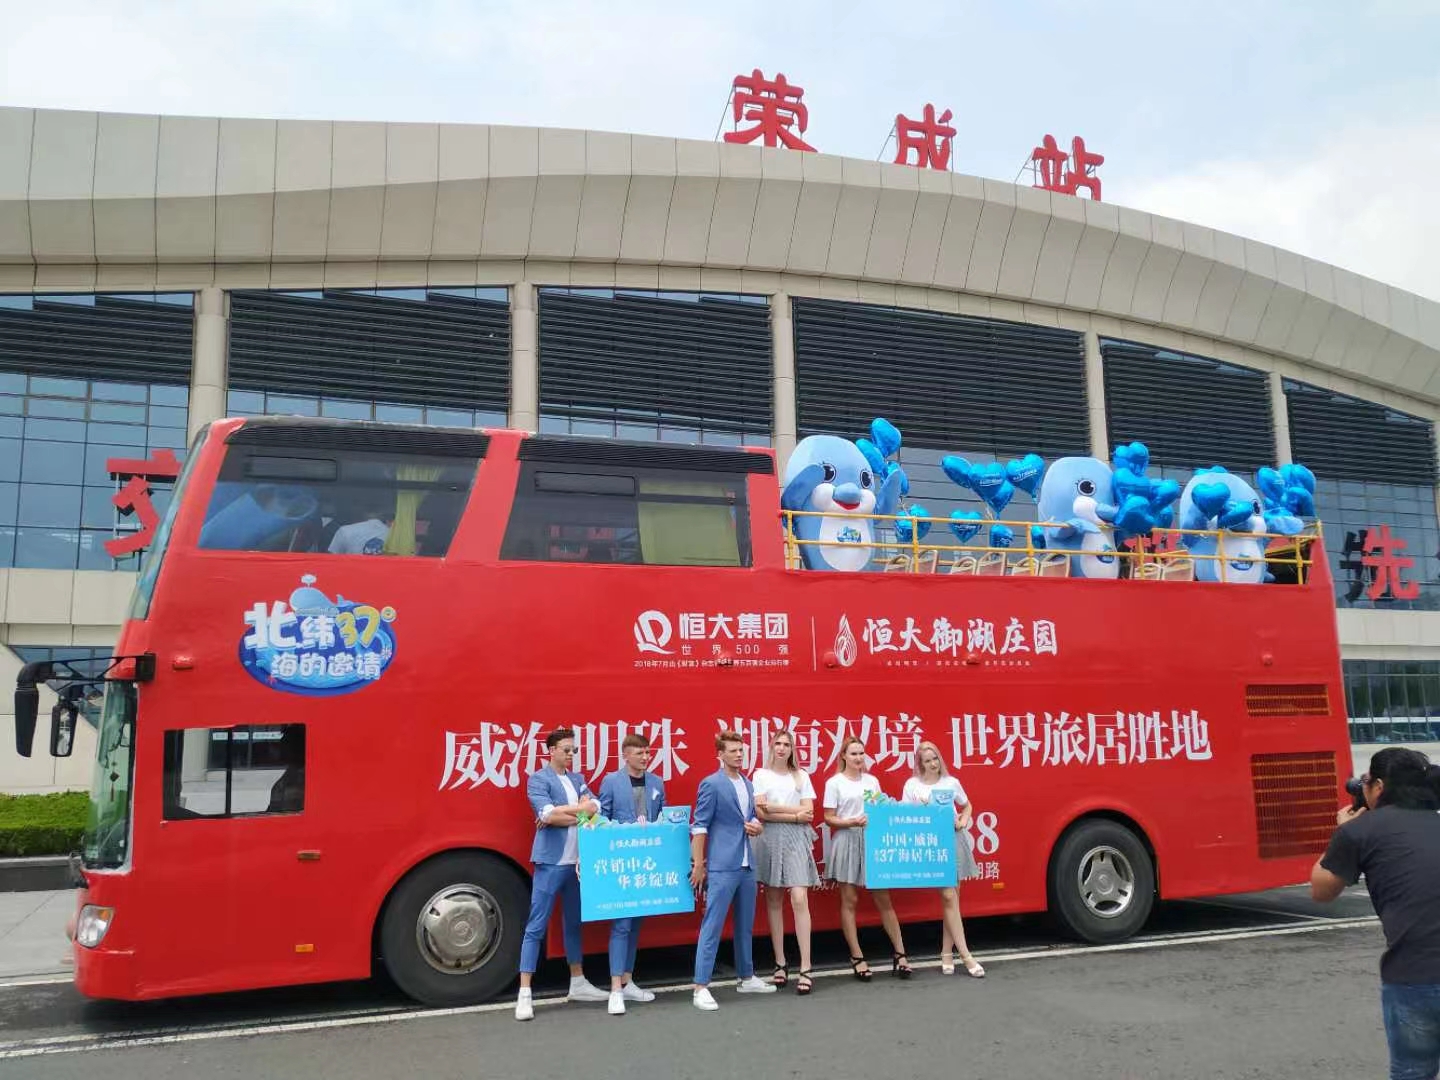 2020年10月2号到3号，安徽良友双层敞篷巡游巴士来到安徽省滁州市